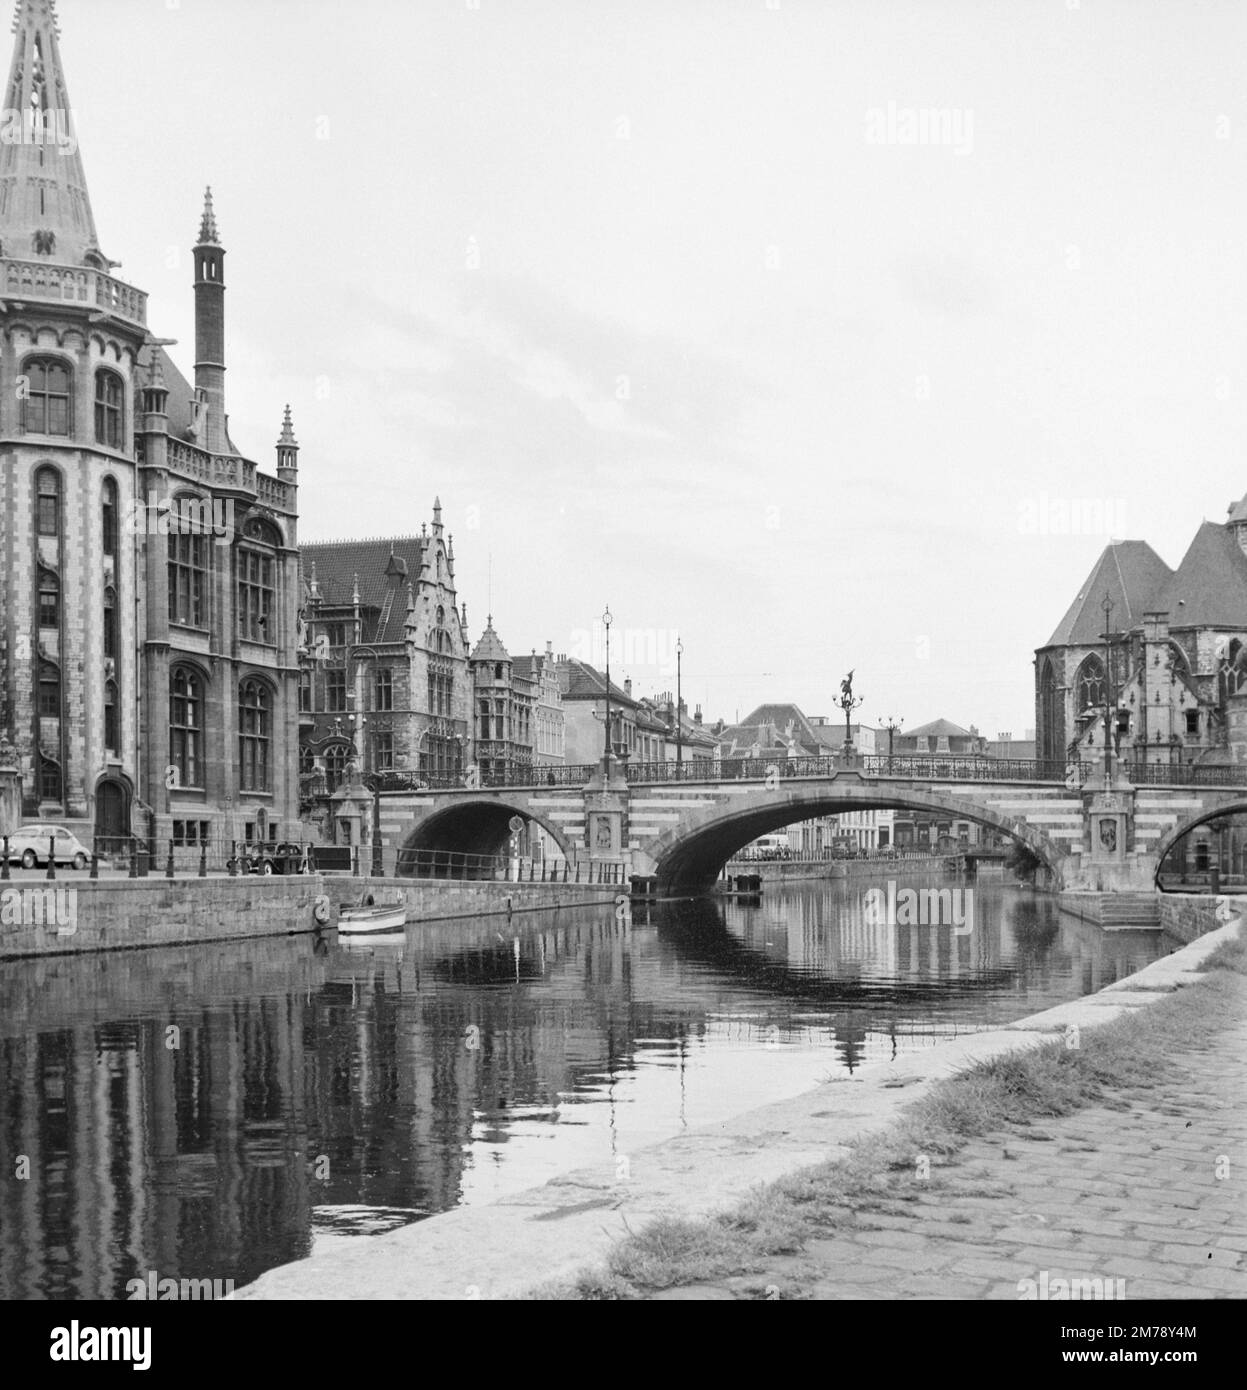 1960er Blick auf den Riverside Graslei Quay am Leie River und die mittelalterliche St. Michael's Bridge in der Altstadt oder dem historischen Viertel Gent Belgien c1960. Klassische Schwarzweiß- oder Schwarzweißfotos. Stockfoto